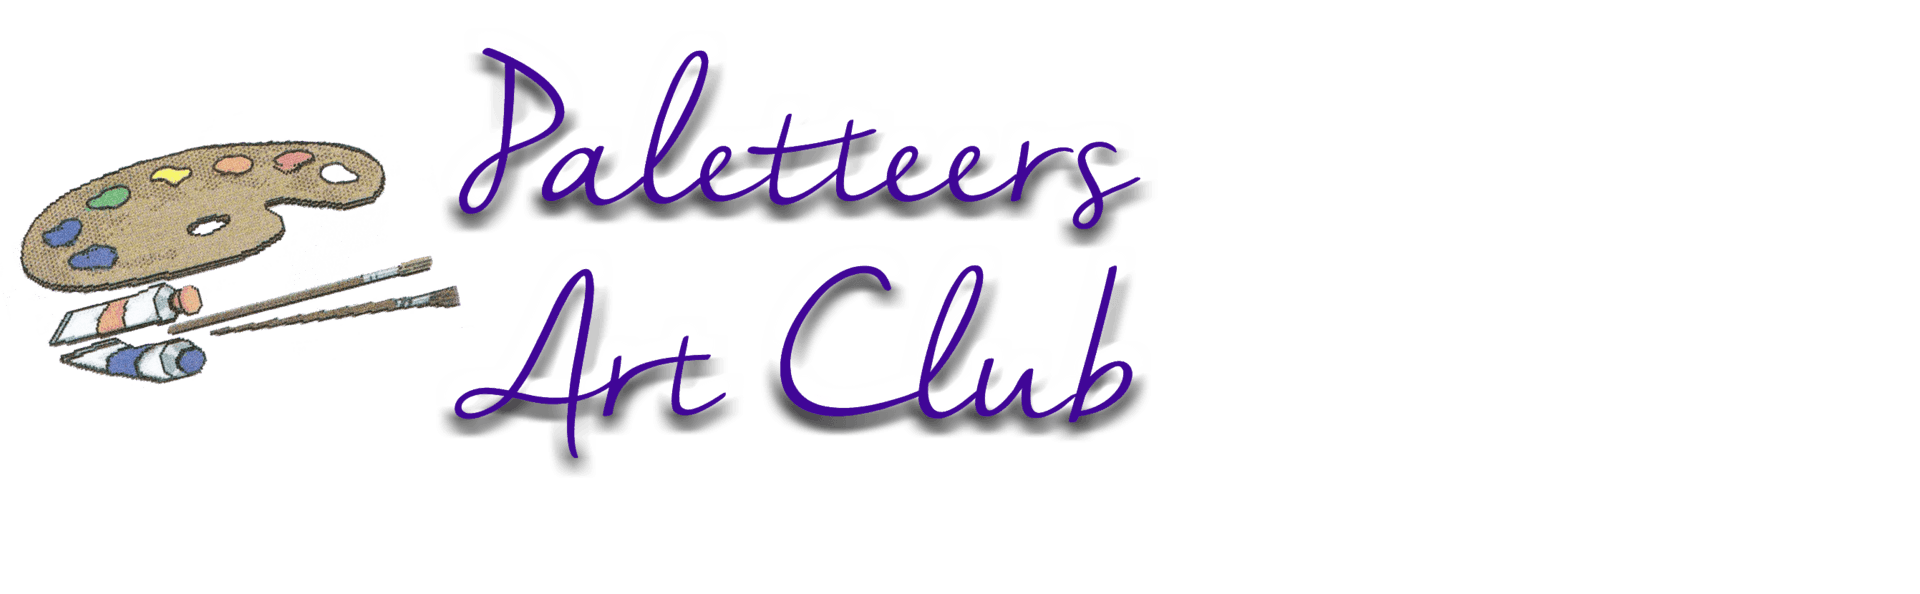 Paletteers Art Club Wheatridge Colorado